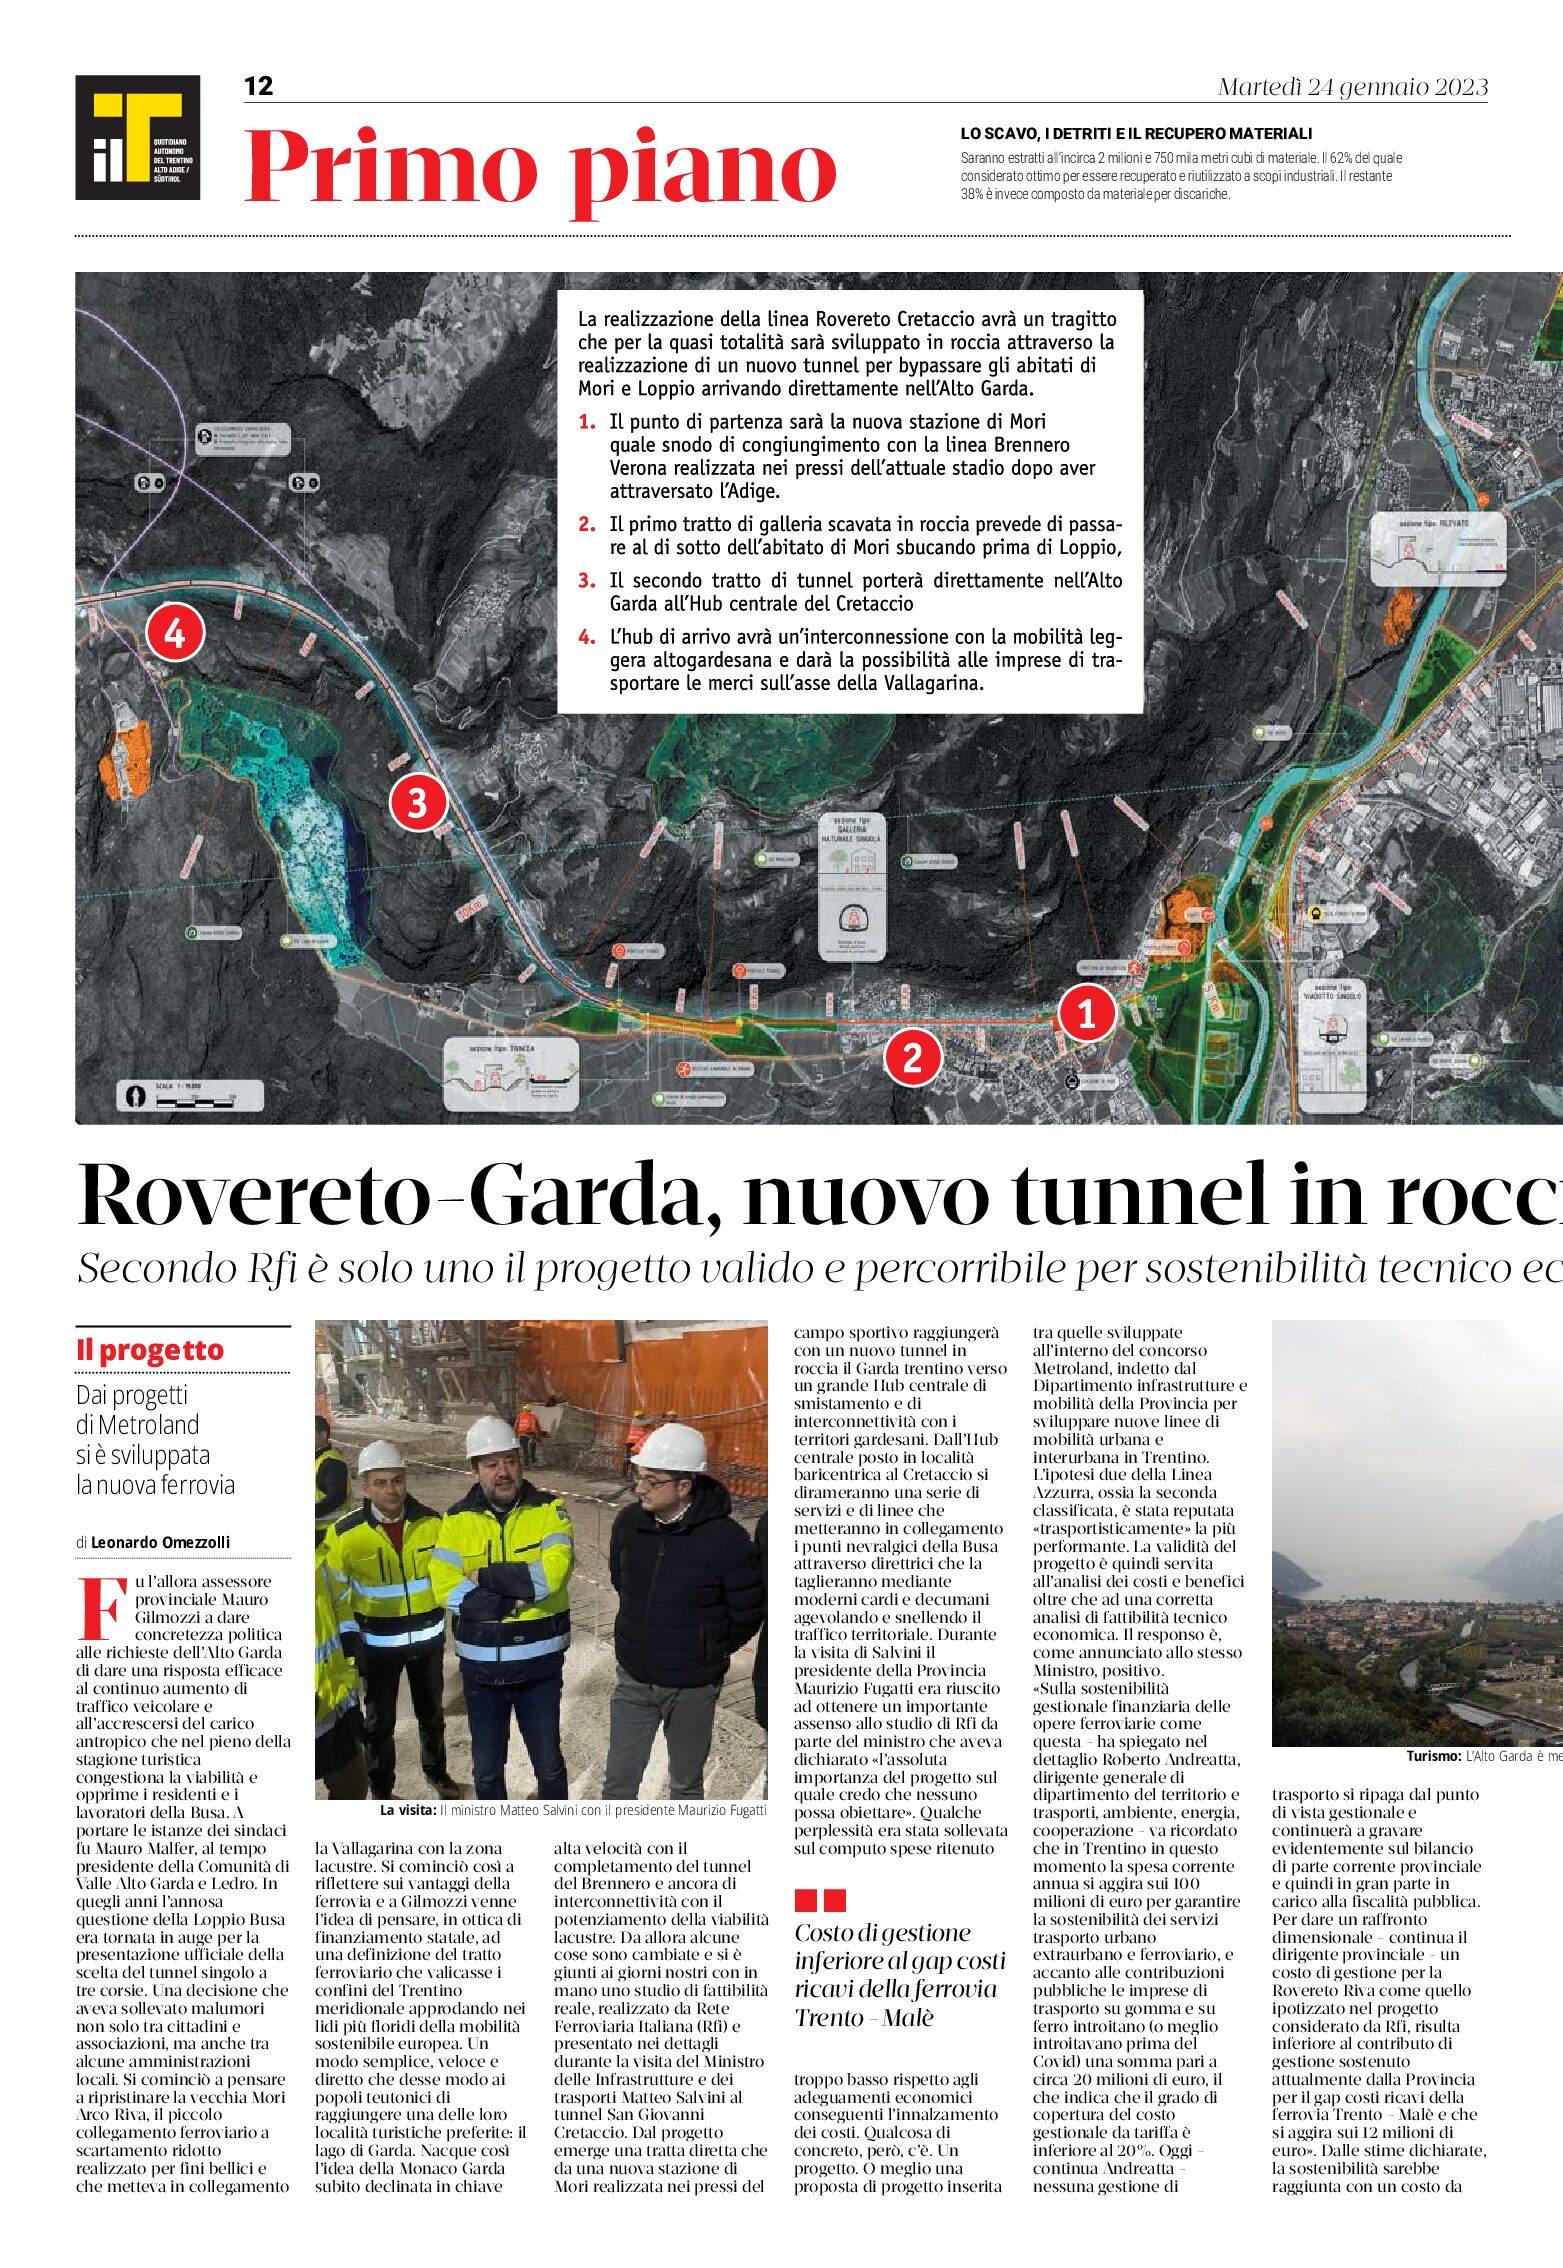 Rovereto-Garda: nuovo tunnel in roccia